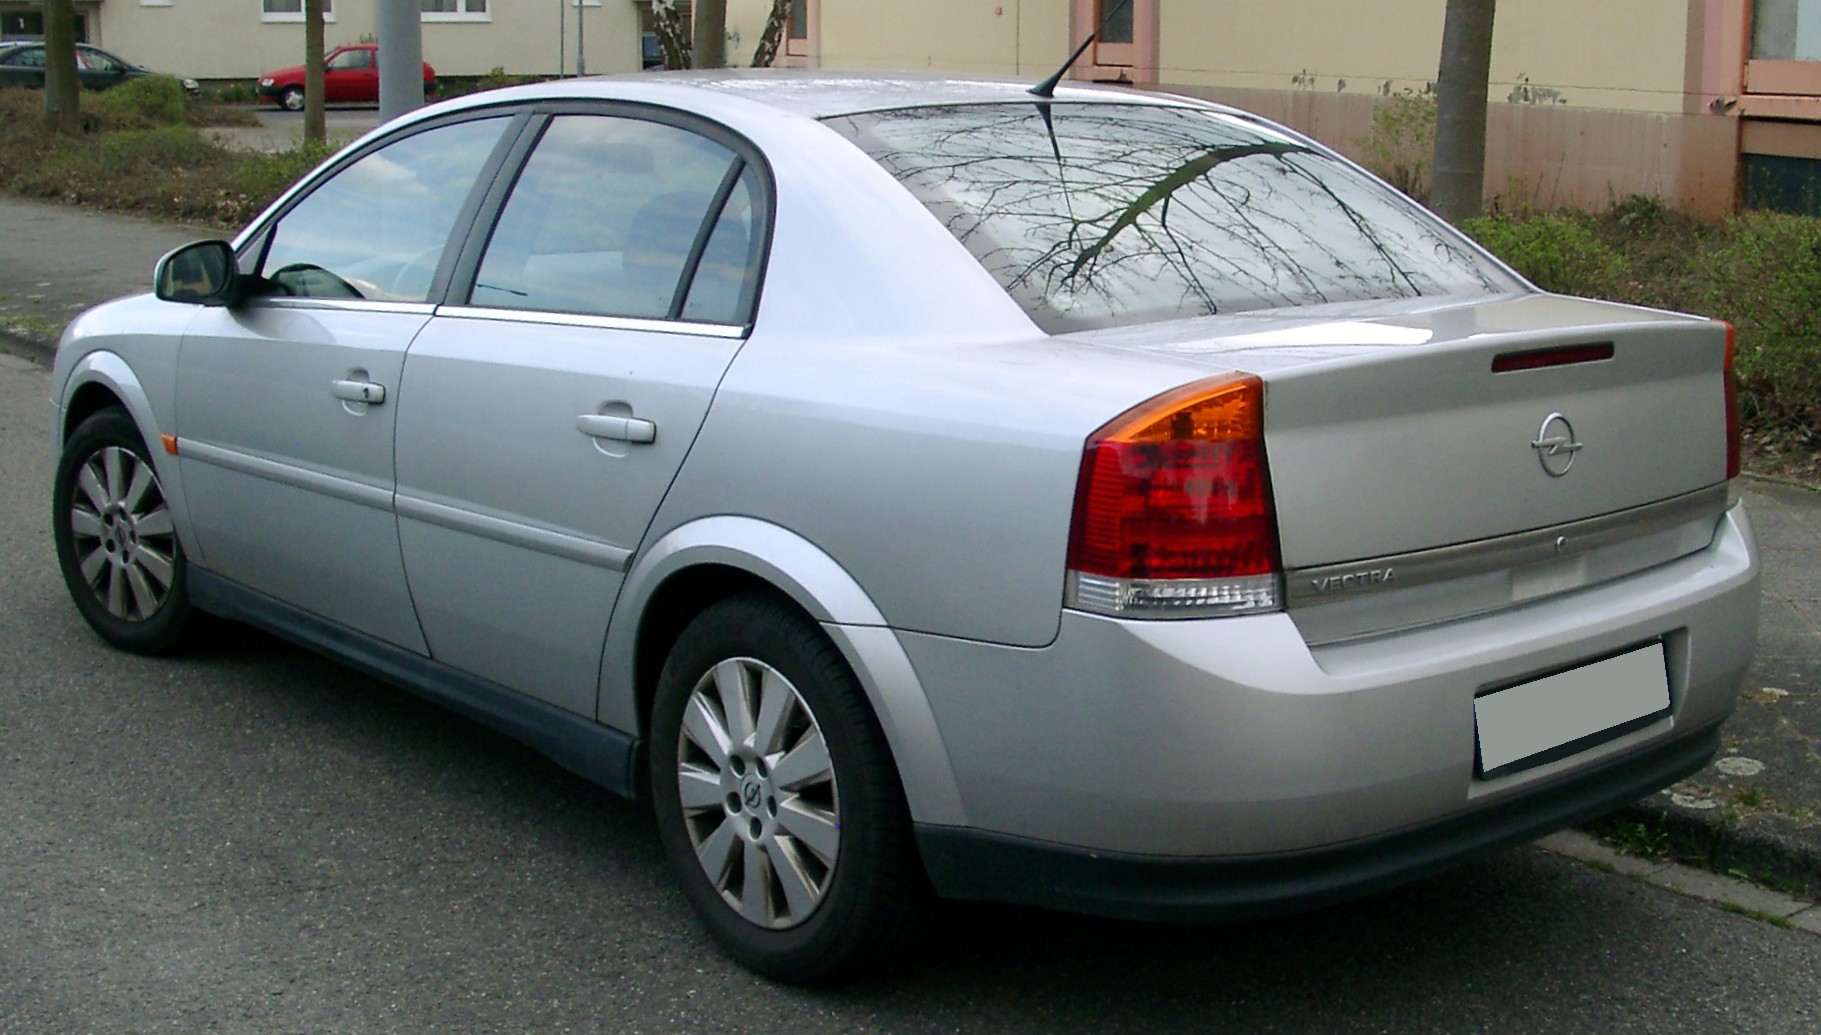 Dossier: Opel Vectra C arrière 20080331.jpg